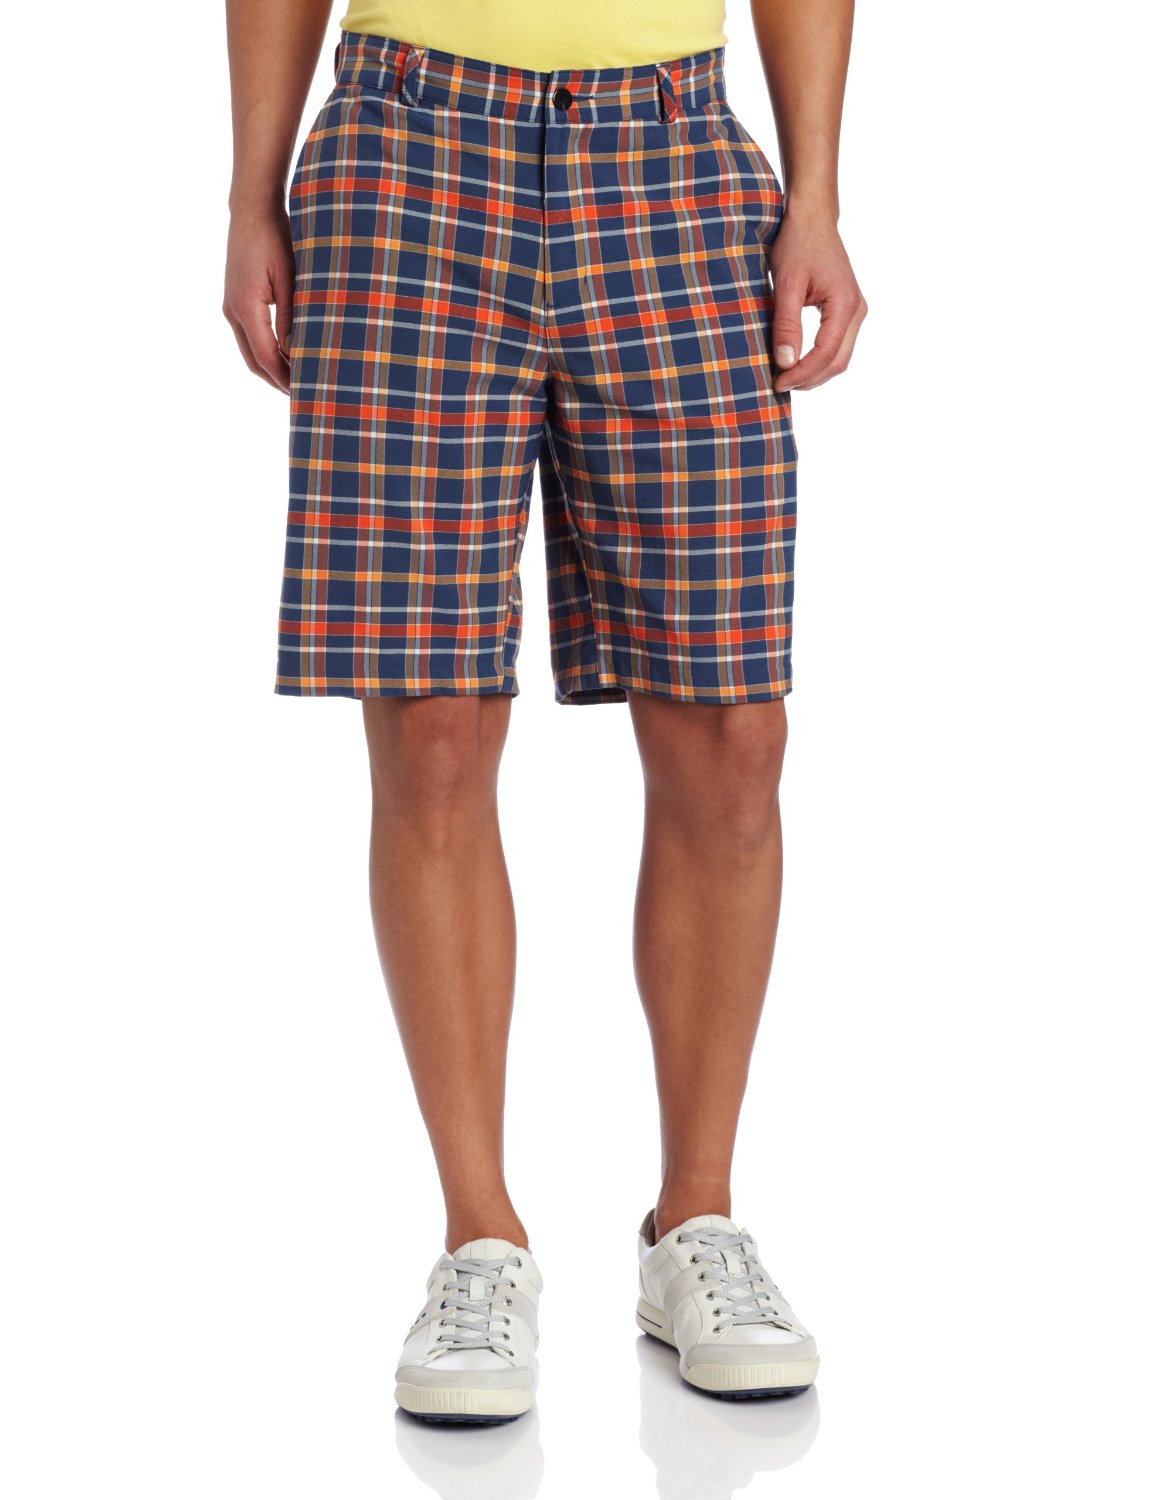 Mens Climalite Fashion Plaid Golf Shorts